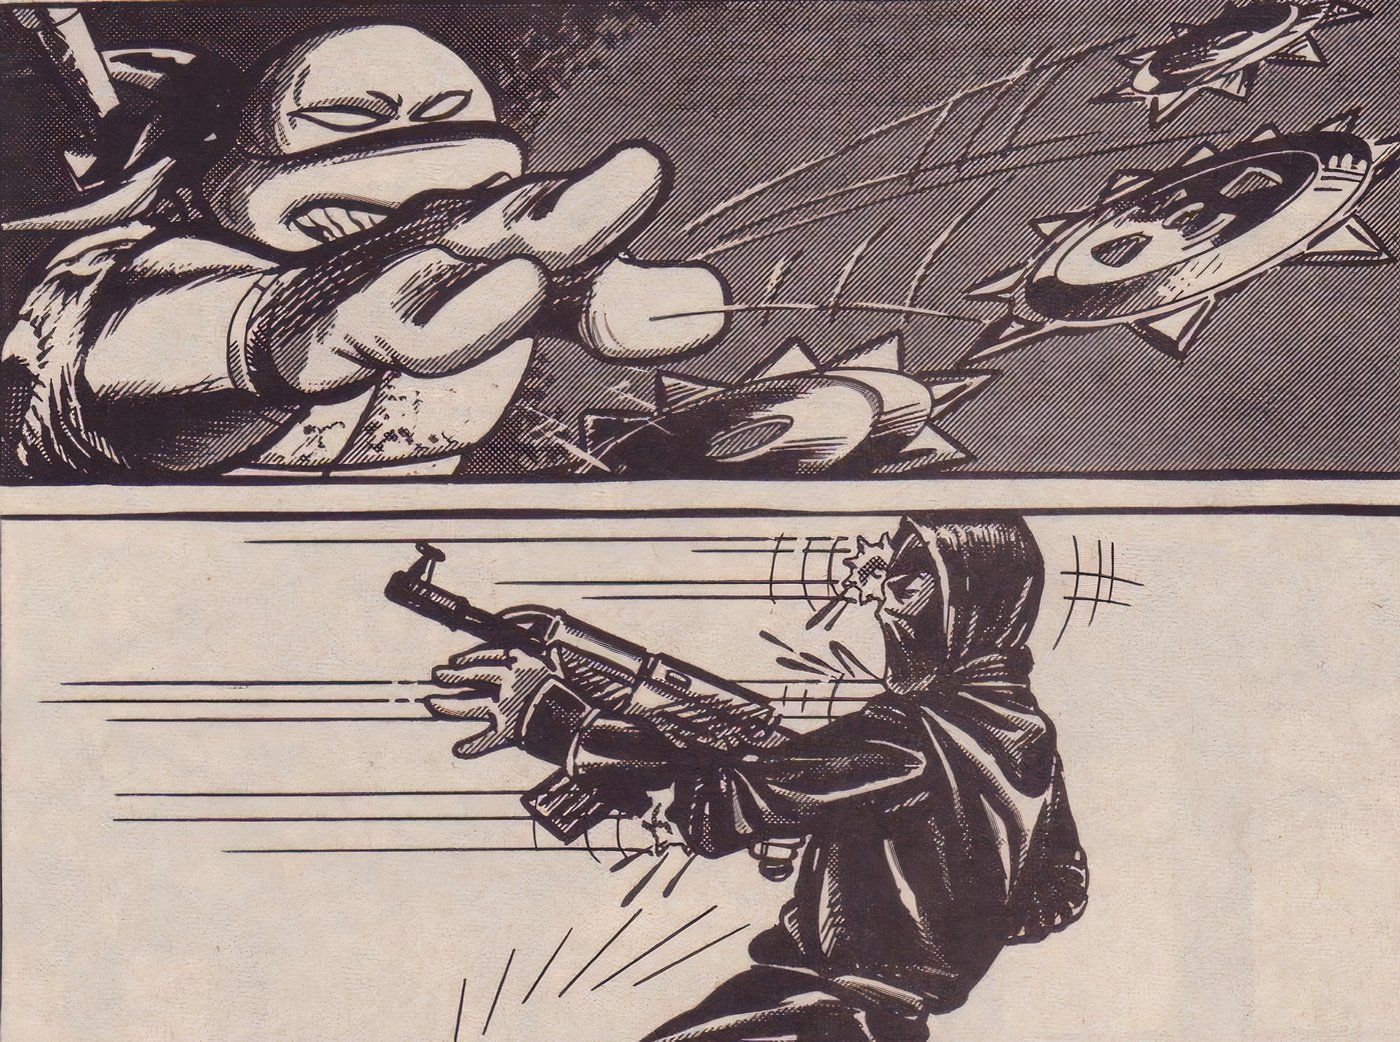 Leonardo, de TMNT, atirando uma shuriken em um ninja segurando uma metralhadora, acertando-o bem na testa.